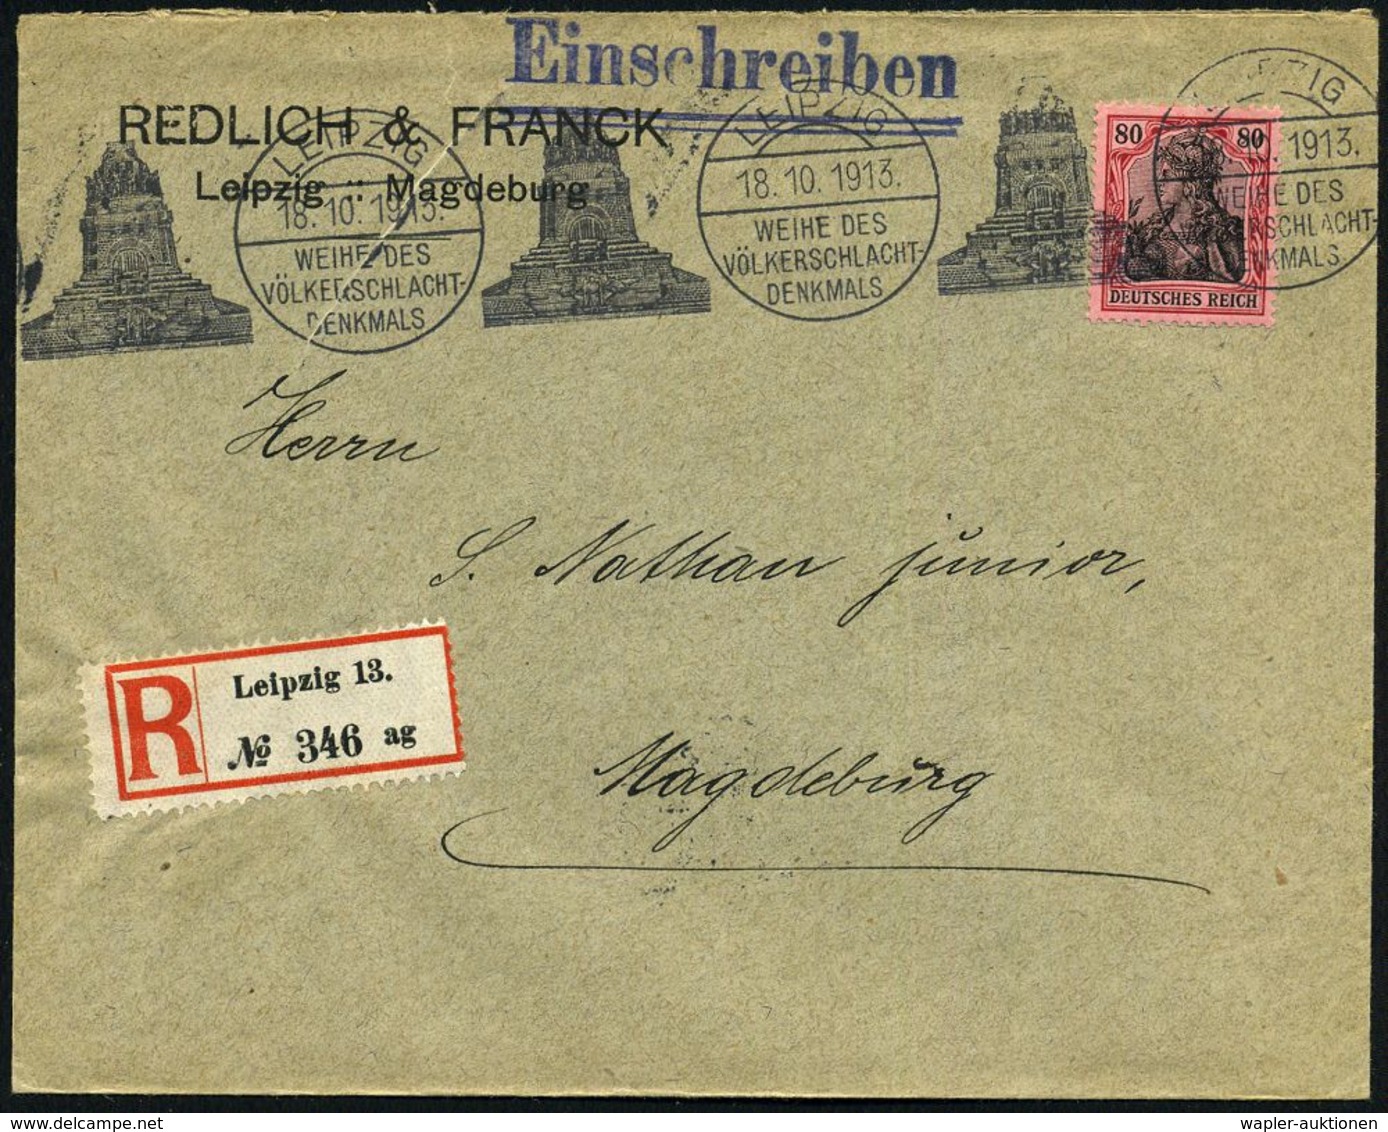 LEIPZIG/ WEIHE DES/ VÖLKERSCHLACHT-/ DENKMALS 1913 (18.10.) BdMWSt Typ "Sylbe & Pondorf" = Völkerschlacht-Denkmal (100 J - Napoleon